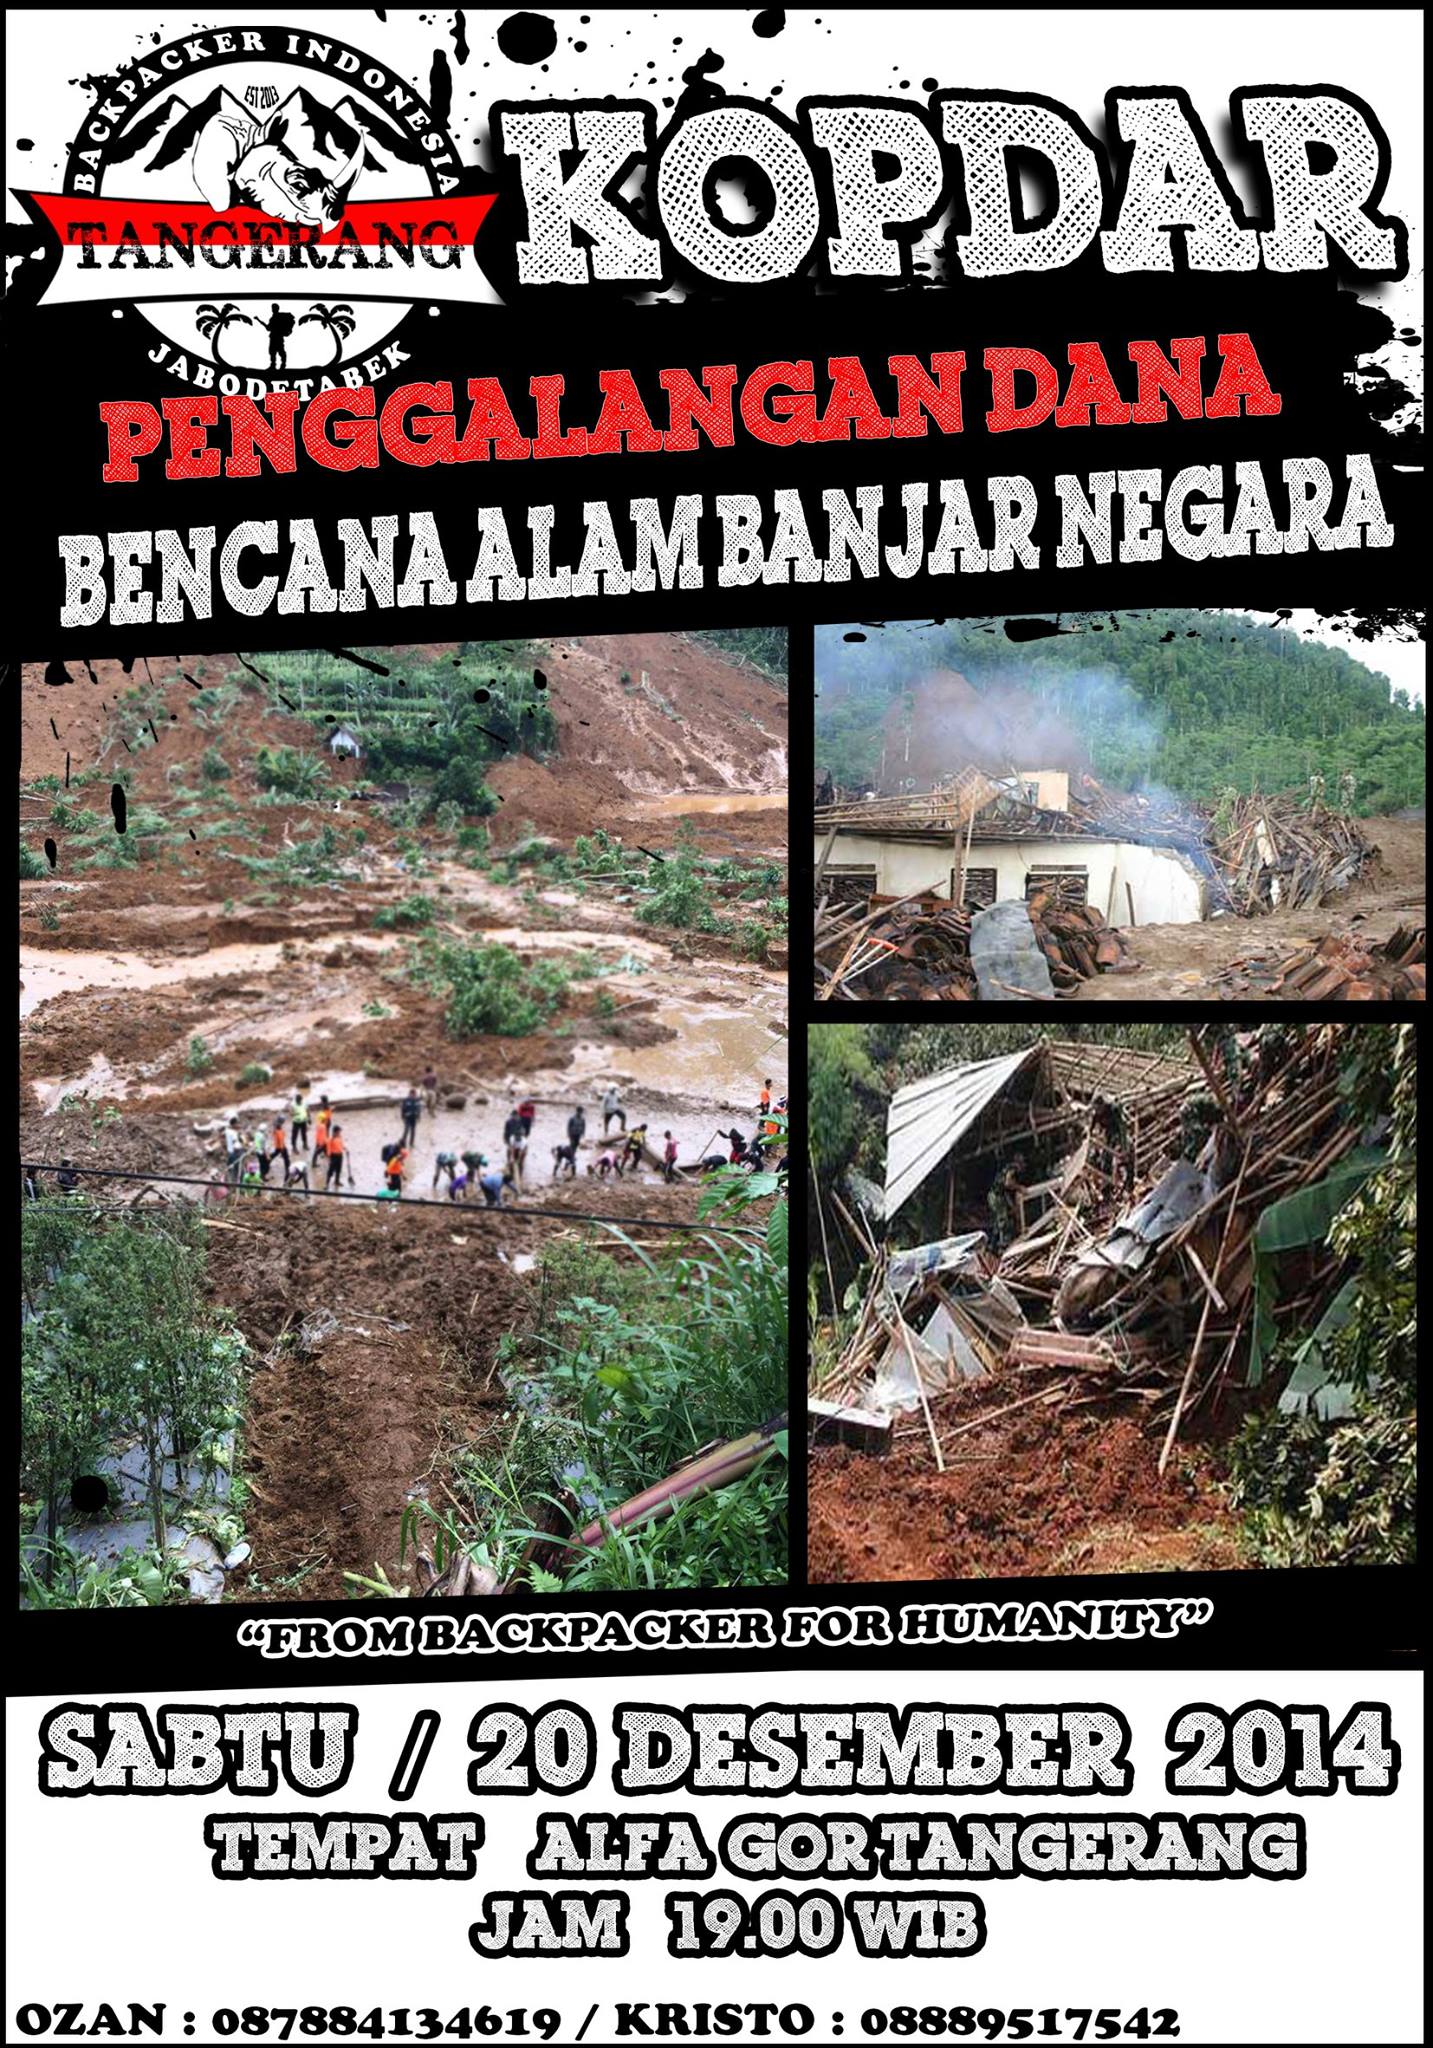 AKSI PENGGALANGAN DANA Untuk Korban Bencana Alam Banjarnegara